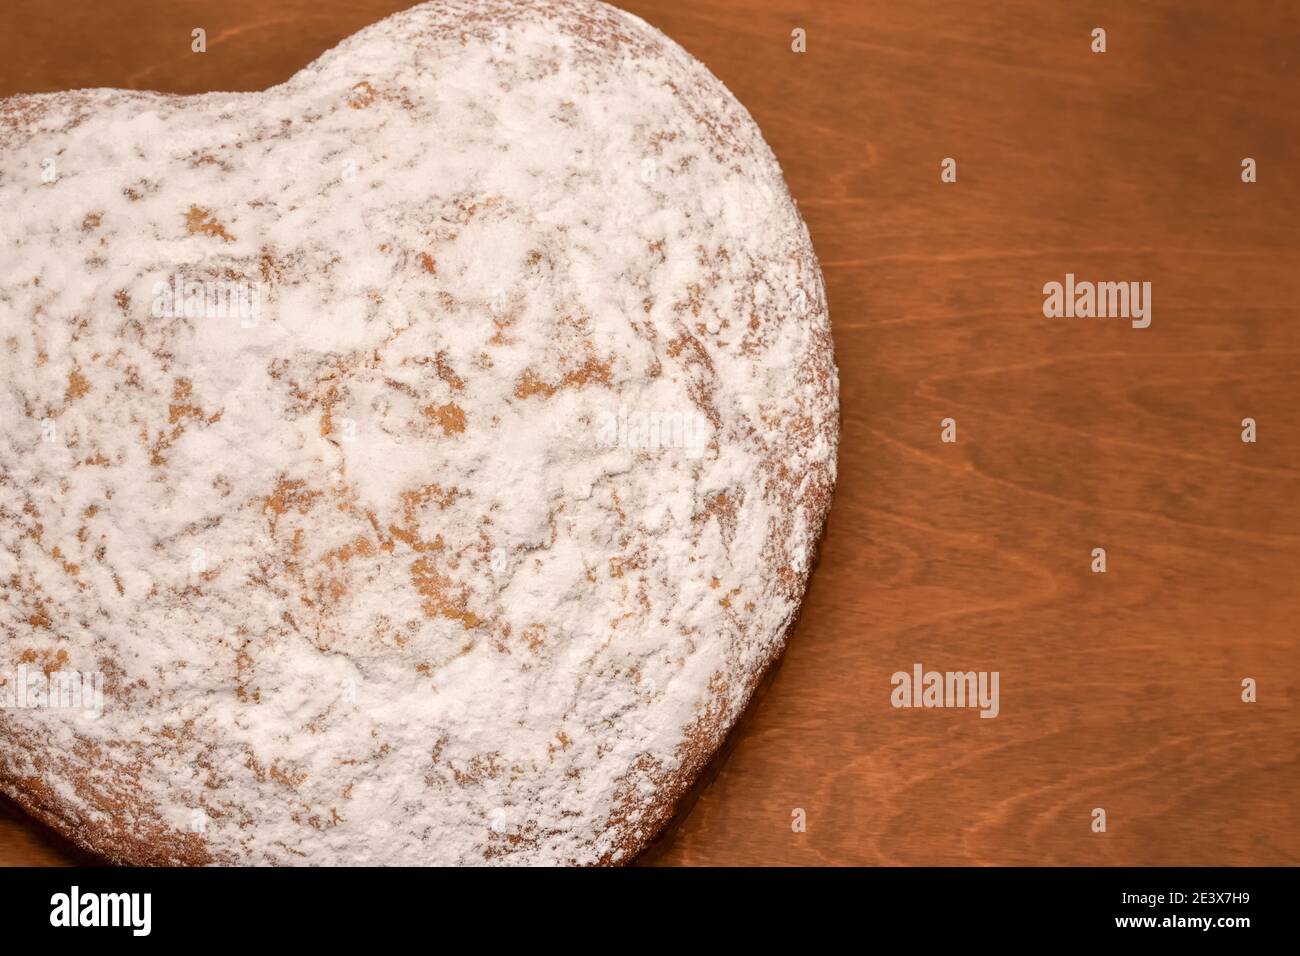 gâteau en forme de coeur, fraîchement cuit et dégoûté avec du sucre en poudre, vue de dessus sur un fond de table en bois Banque D'Images